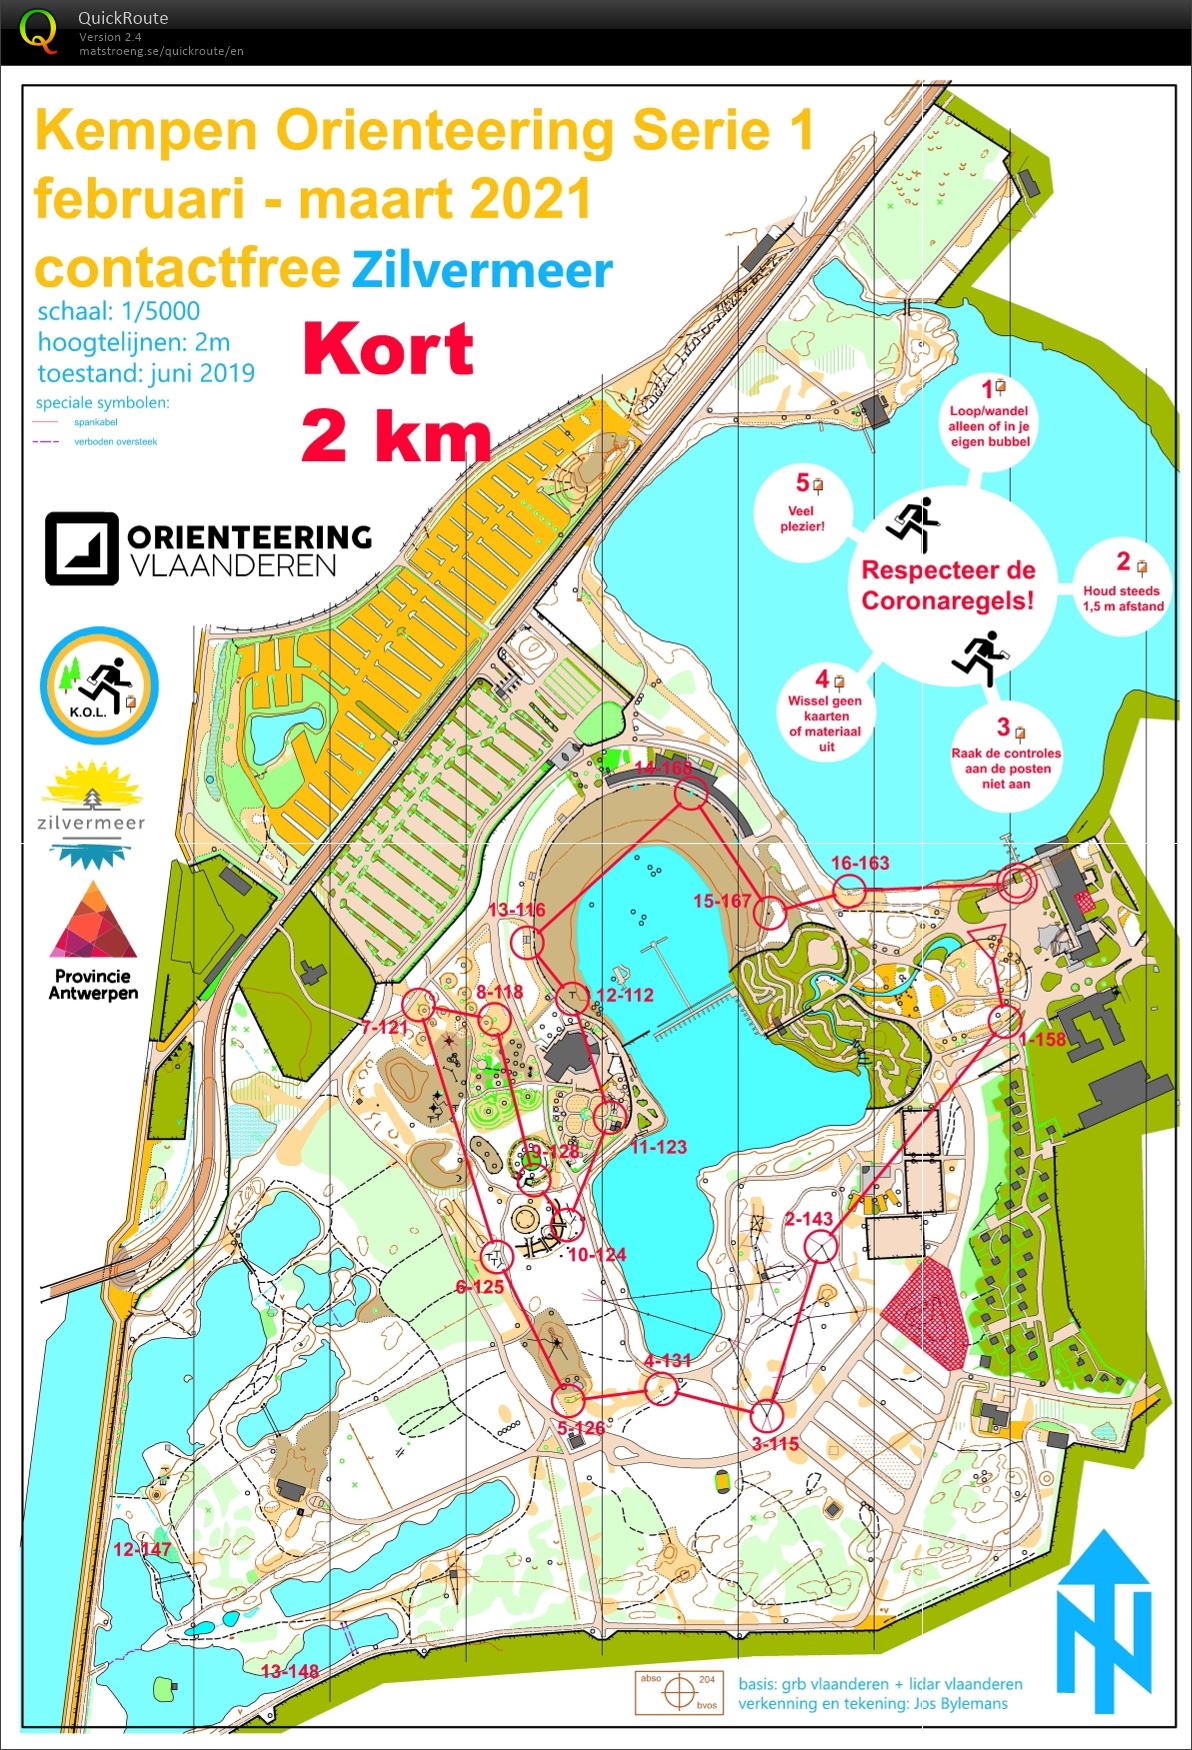 Kempen Orienteering Series - Zilvermeer - Kort (07/03/2021)